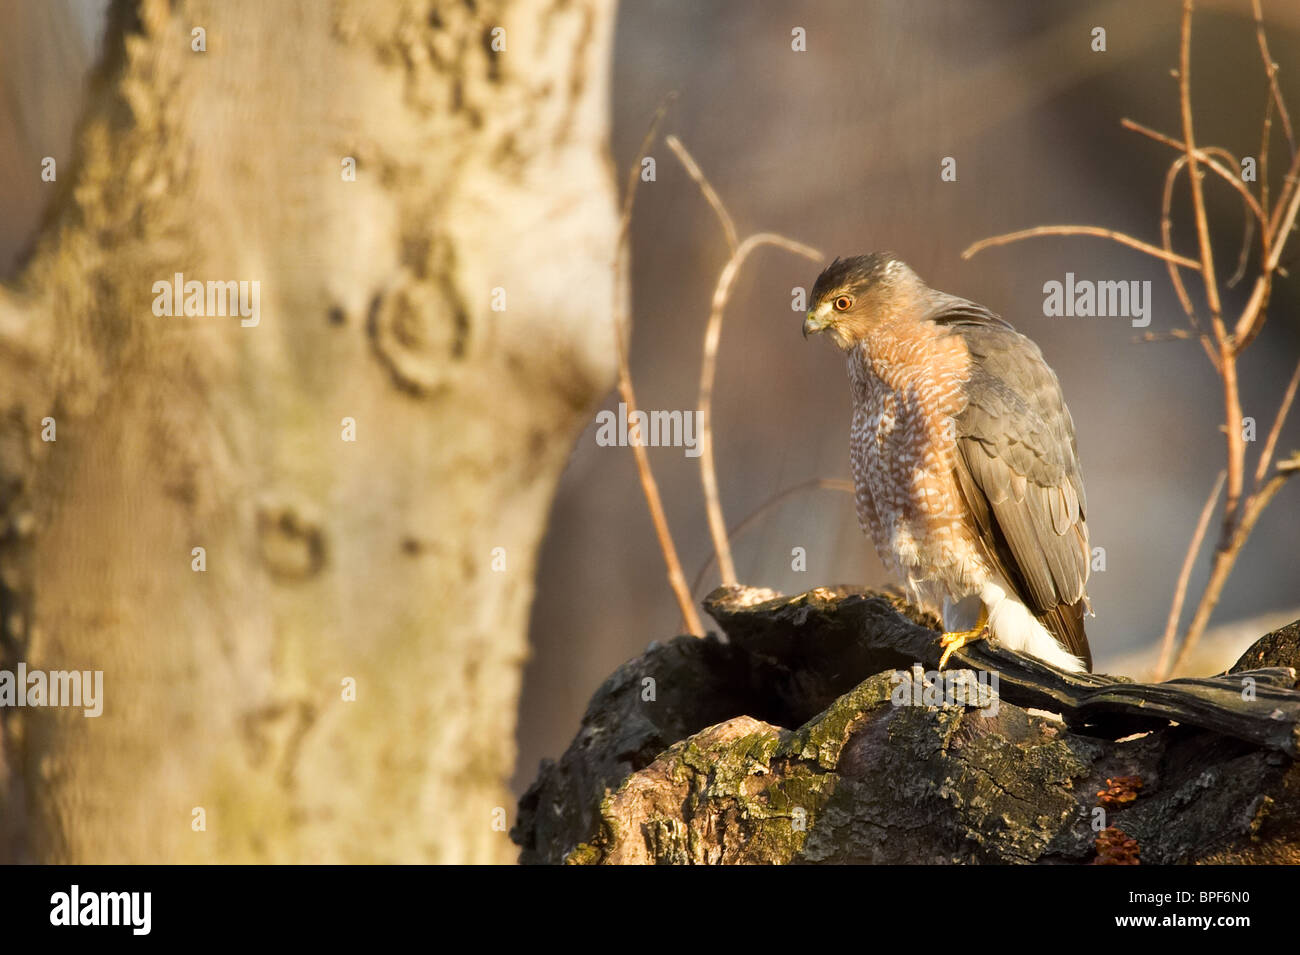 Adulto Cooper's Hawk encaramado en un árbol muerto al atardecer Foto de stock